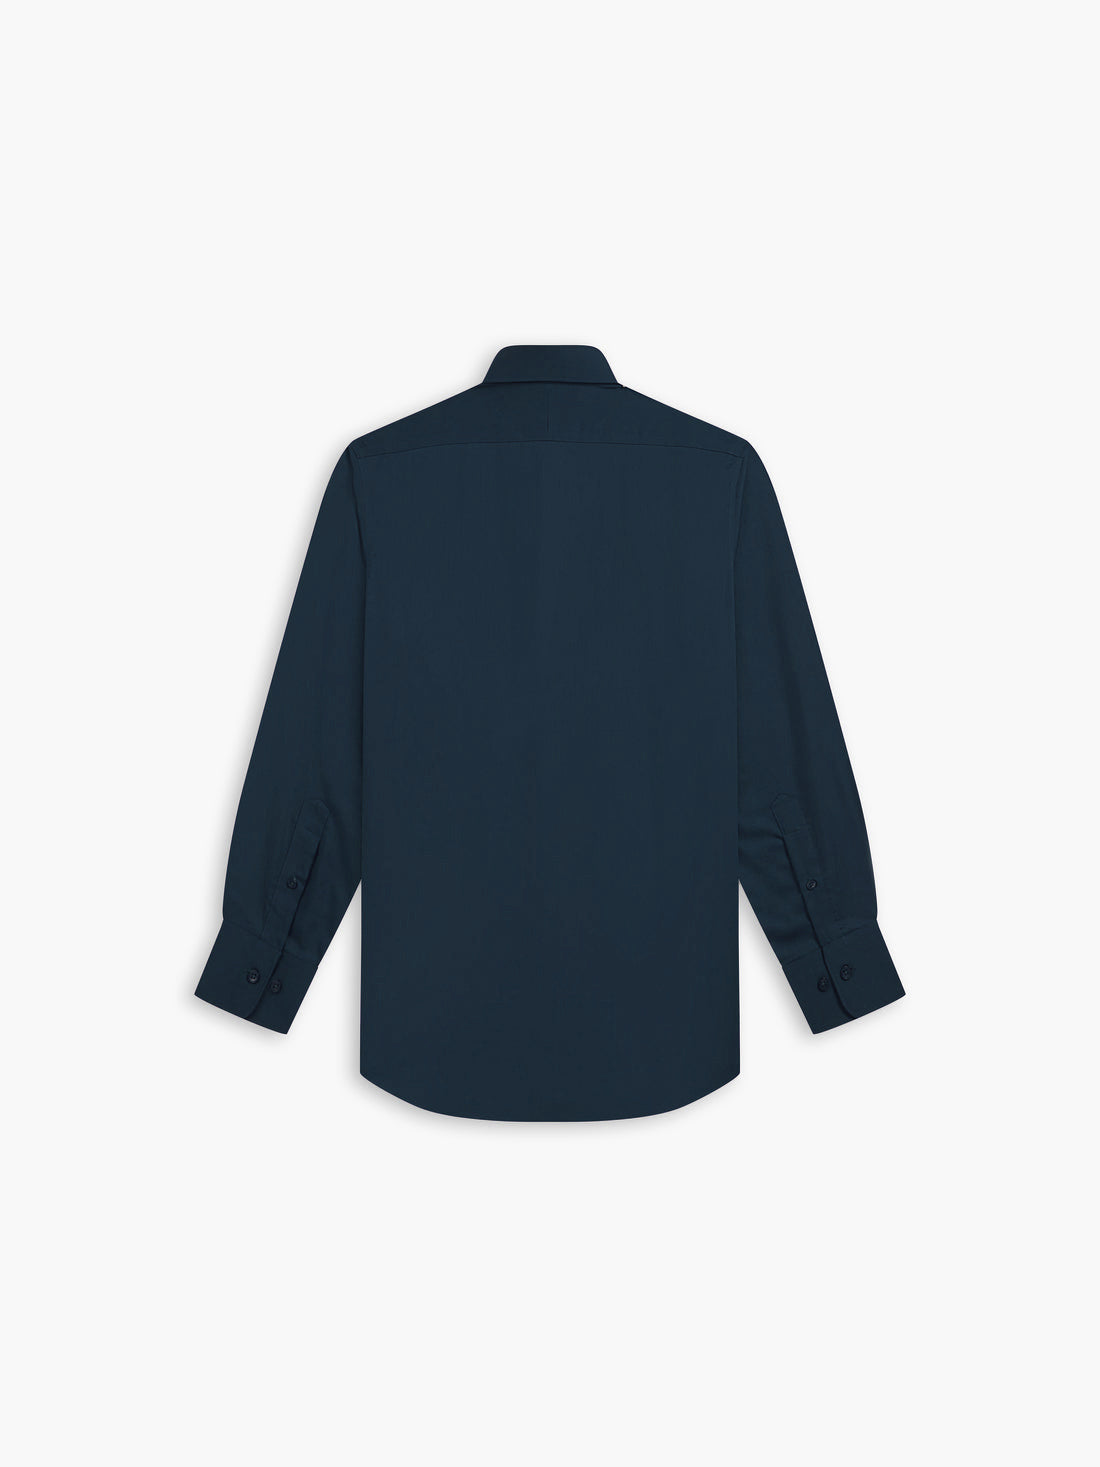 Max Performance Navy Blue Twill Slim Fit Single Cuff Classic Collar Shirt